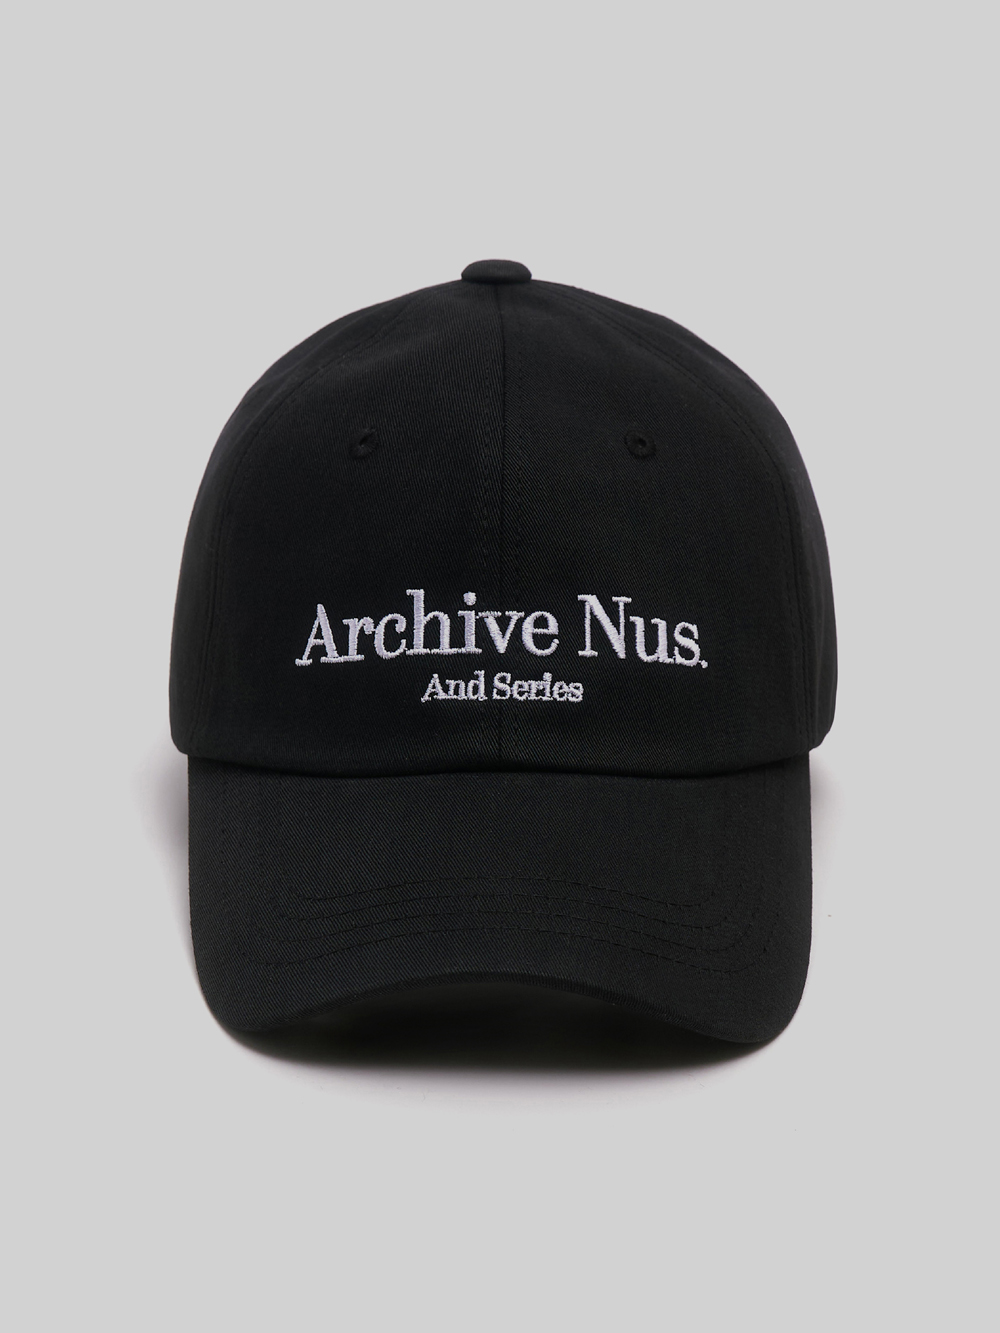 Nus. arch ball cap (Black)